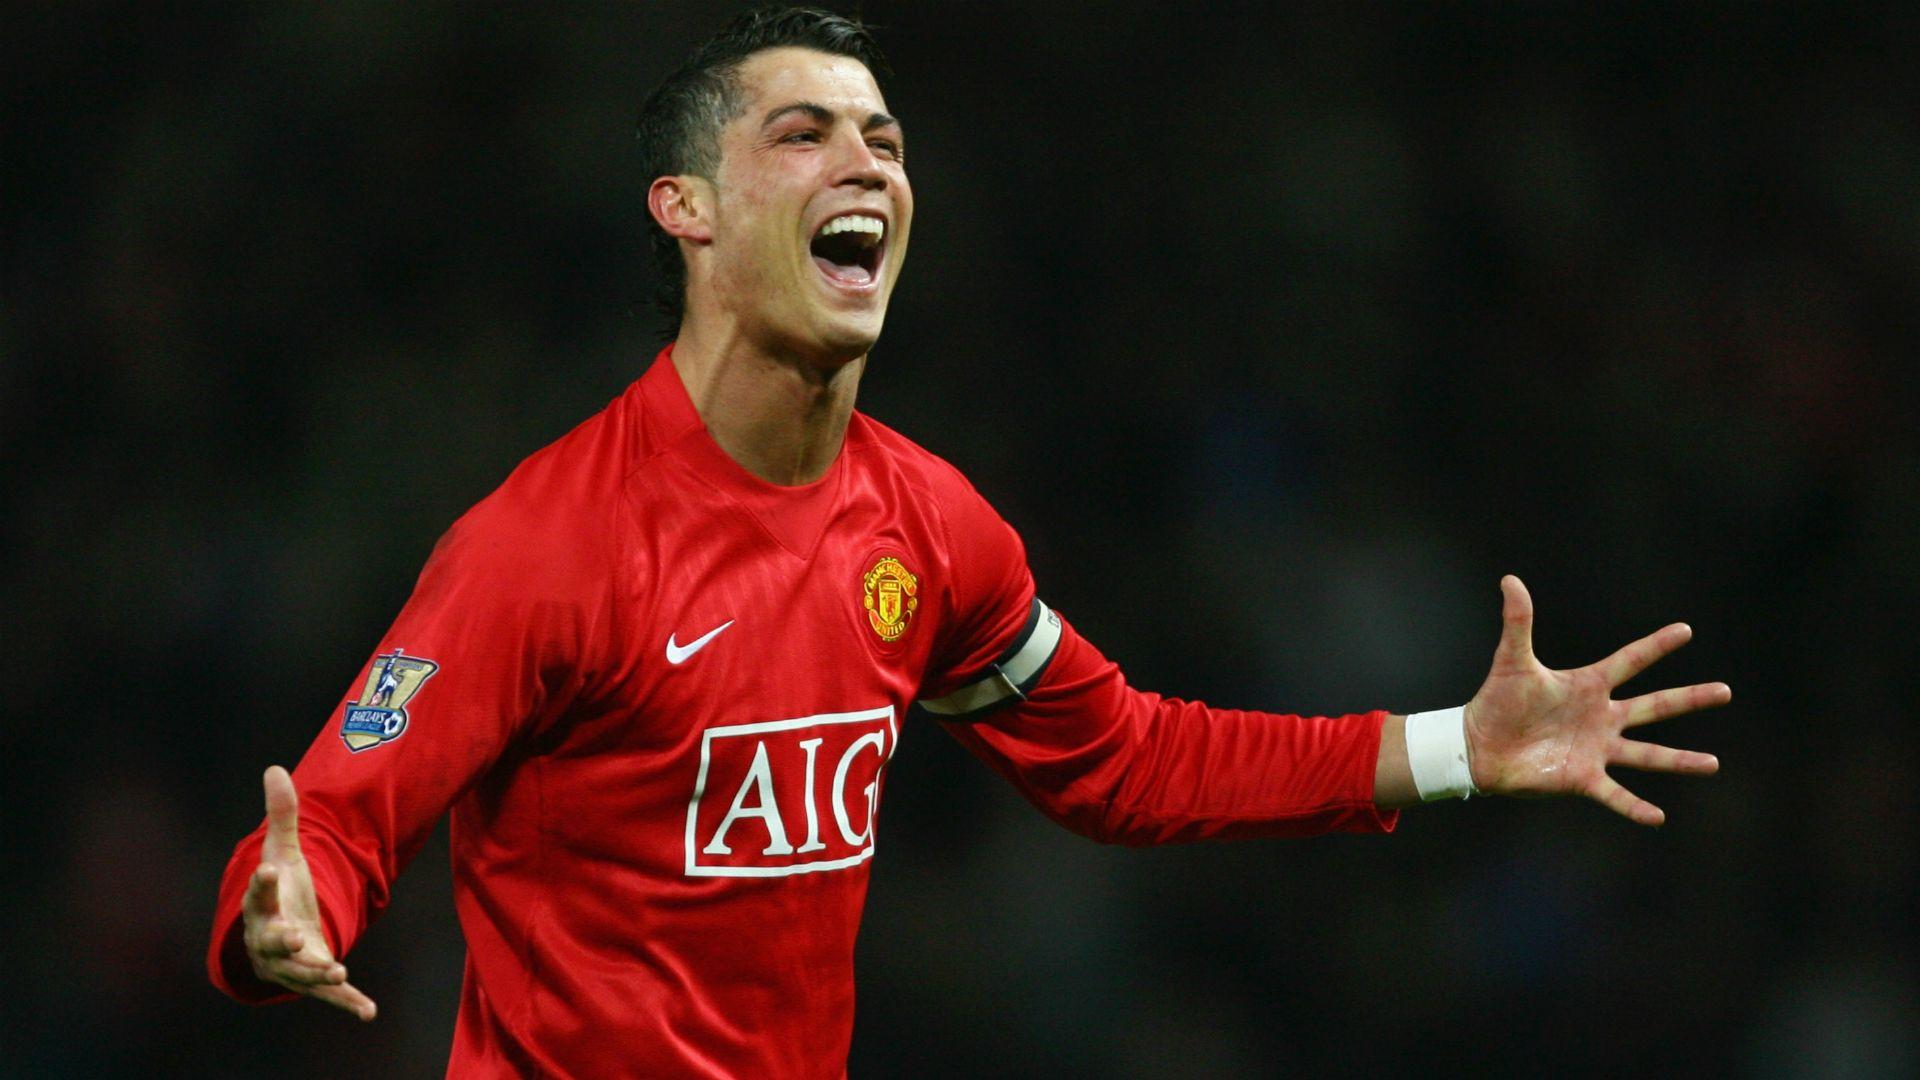 Ronaldo swapped showmanship for goals